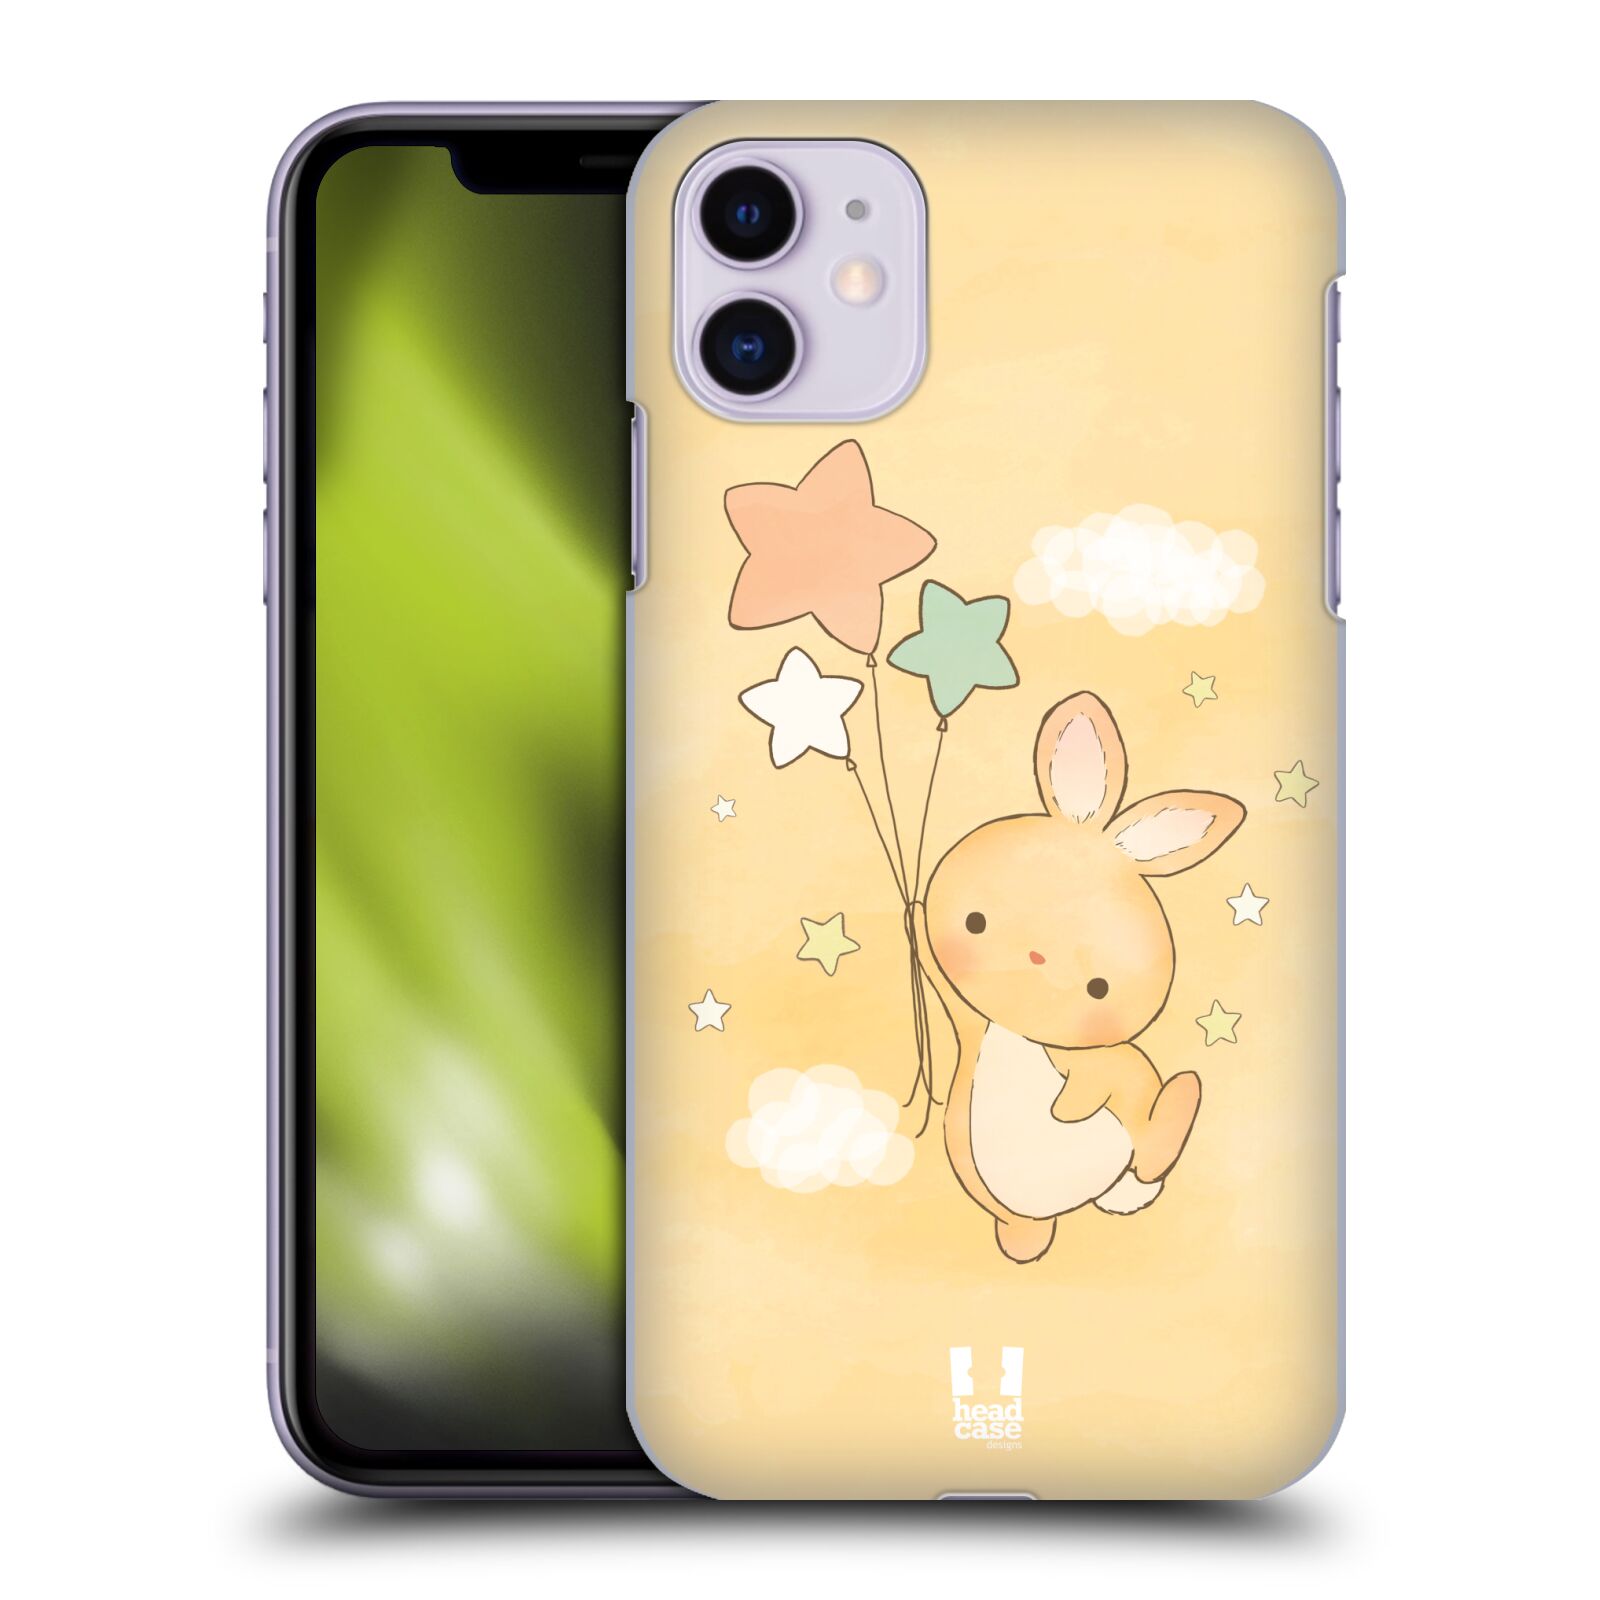 Pouzdro na mobil Apple Iphone 11 - HEAD CASE - vzor králíček a hvězdy žlutá